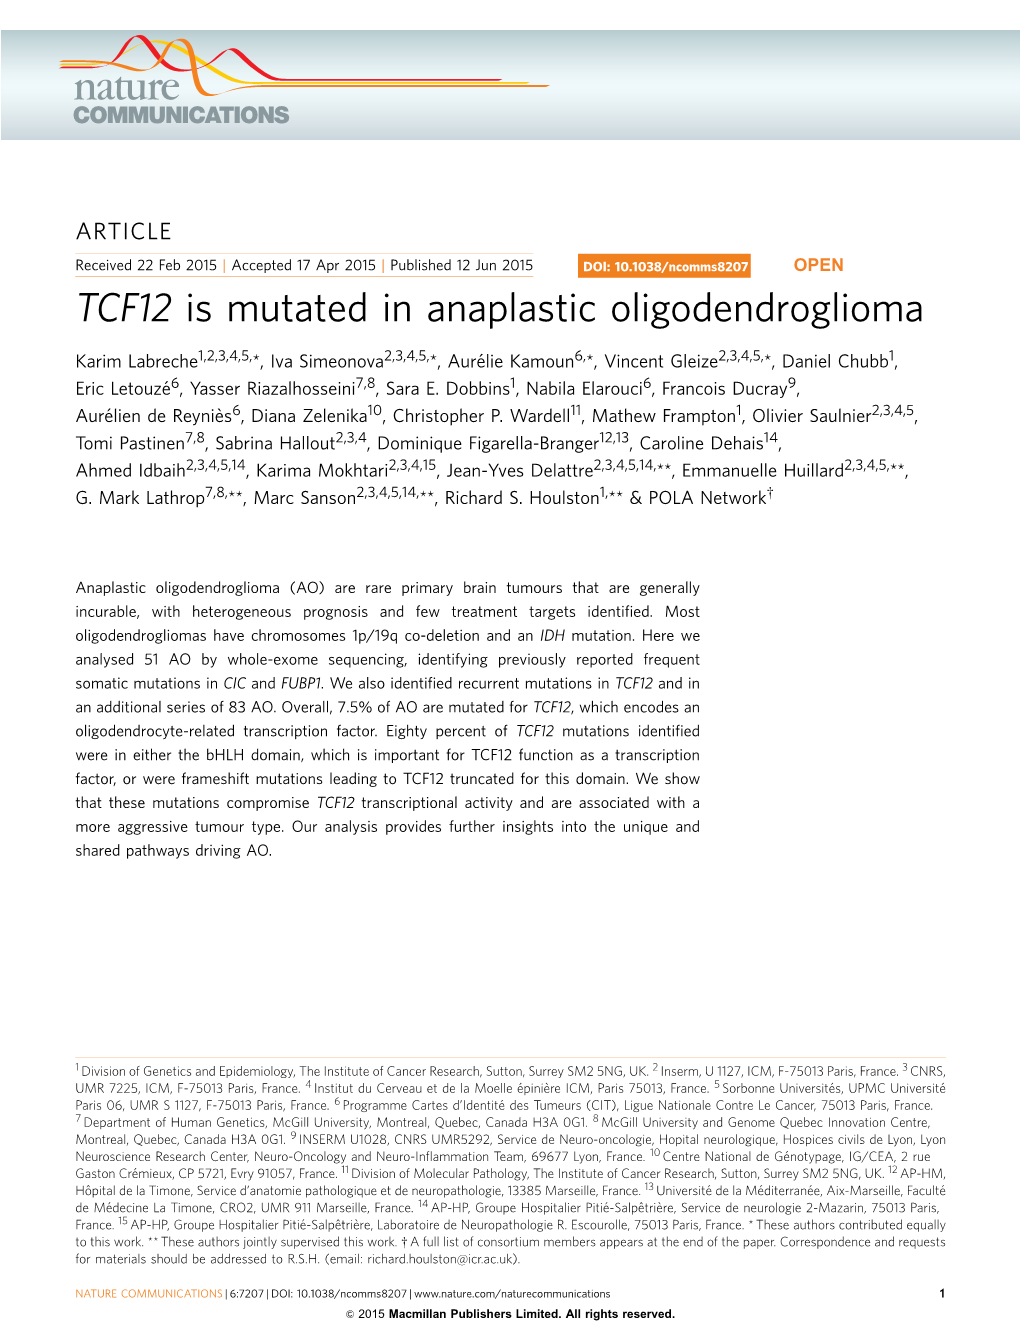 TCF12 Is Mutated in Anaplastic Oligodendroglioma